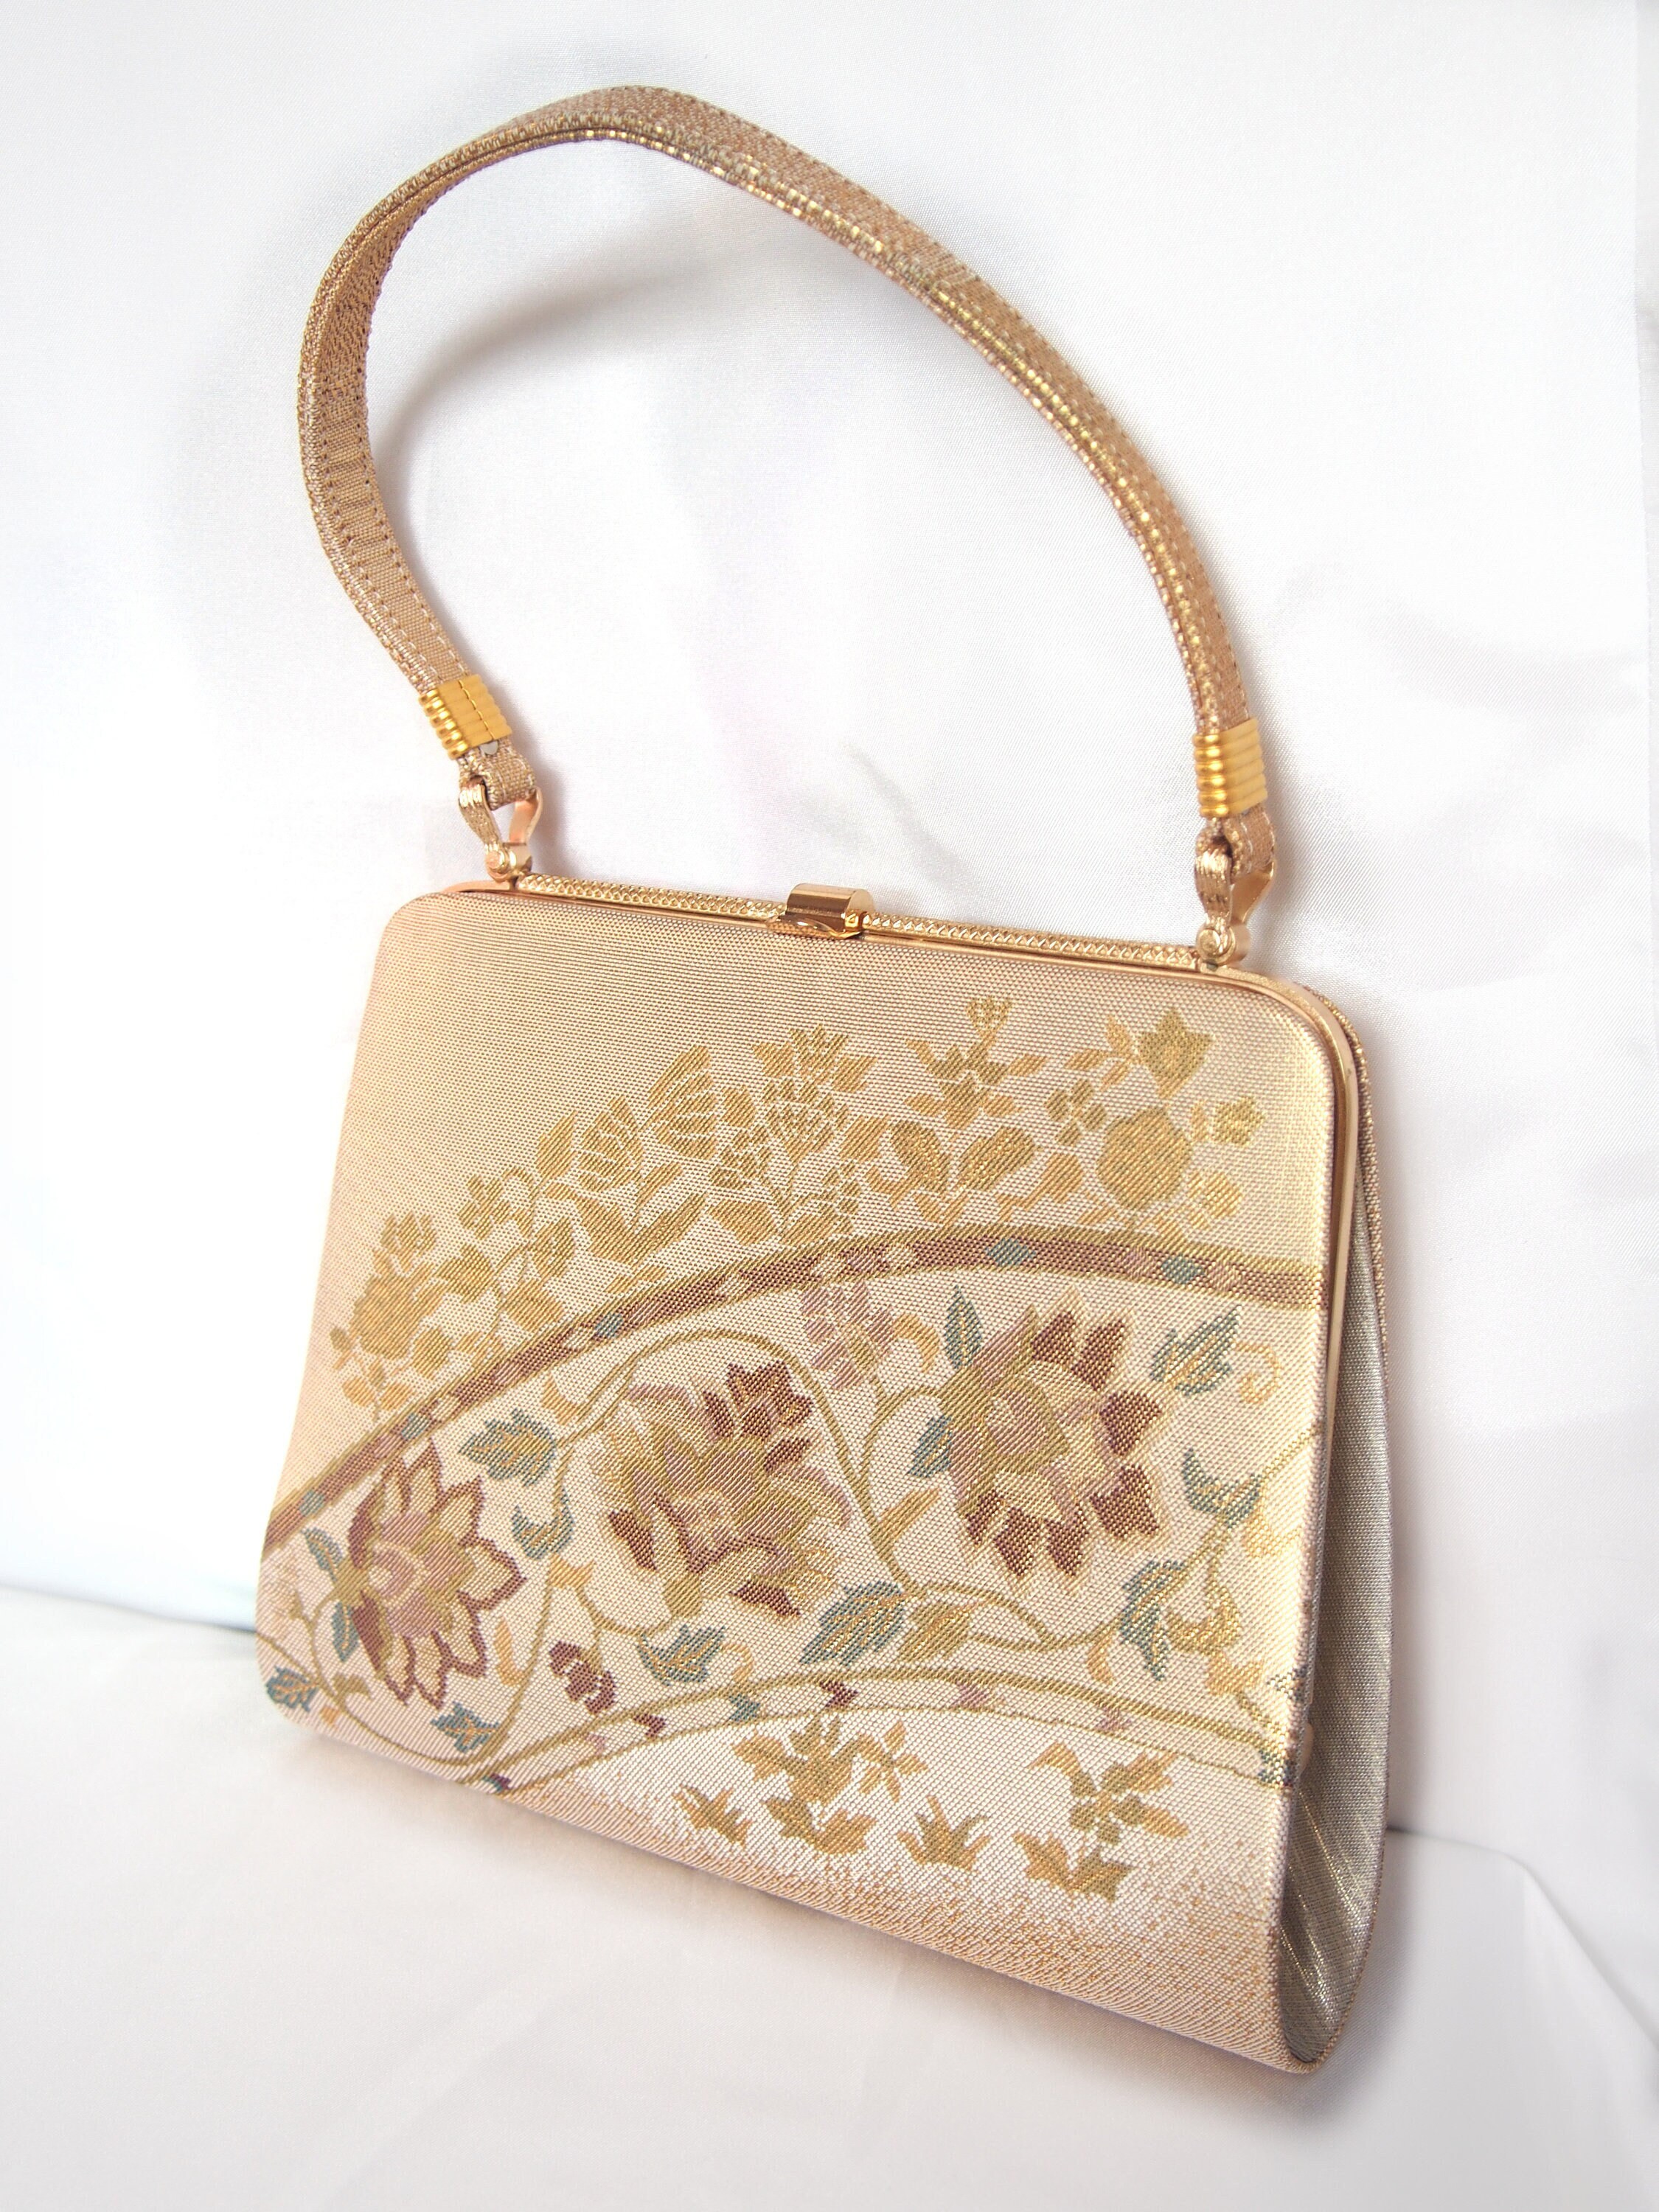 XXSLOUISVUITTON KIMONO Women Shopping Package MICHAEL 96 KOR  Shoulder Bag Clutch Handbag WALLET M40459 Totes From Honghuo201988, $24.32